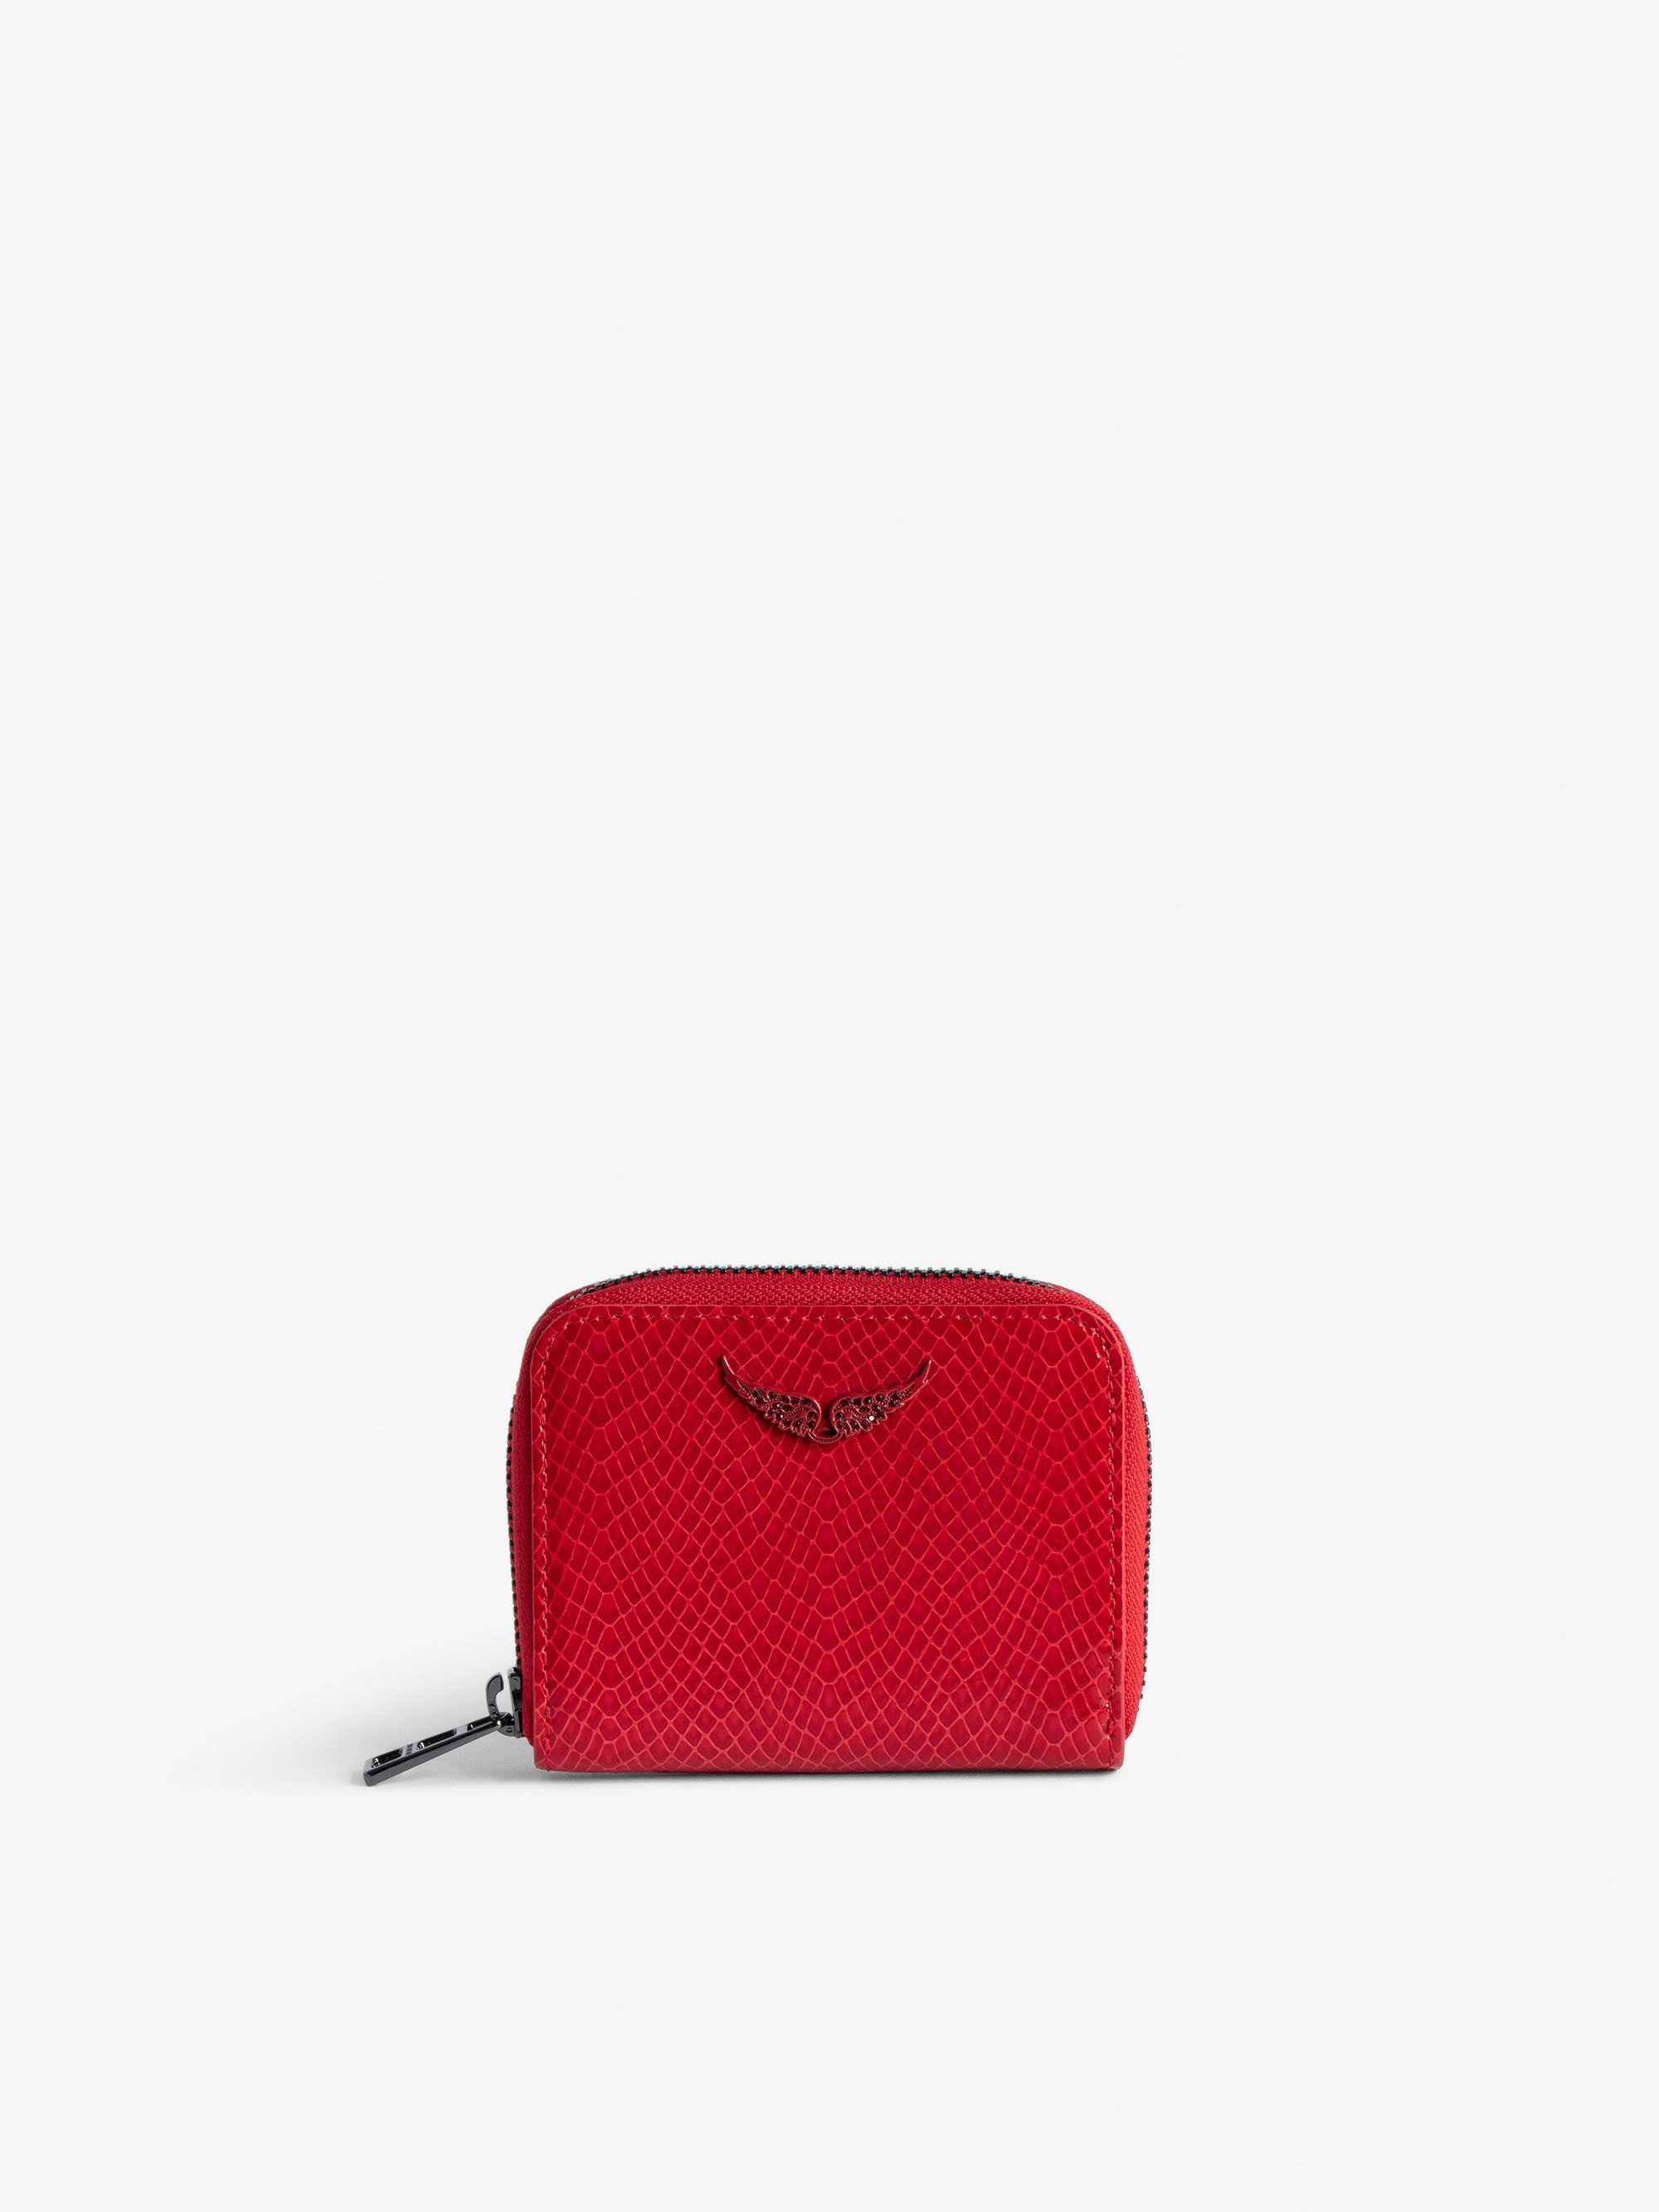 Porte-Monnaie Mini ZV Glossy Wild Embossé - Portefeuille en cuir brillant rouge effet python orné d'un charm ailes à strass.